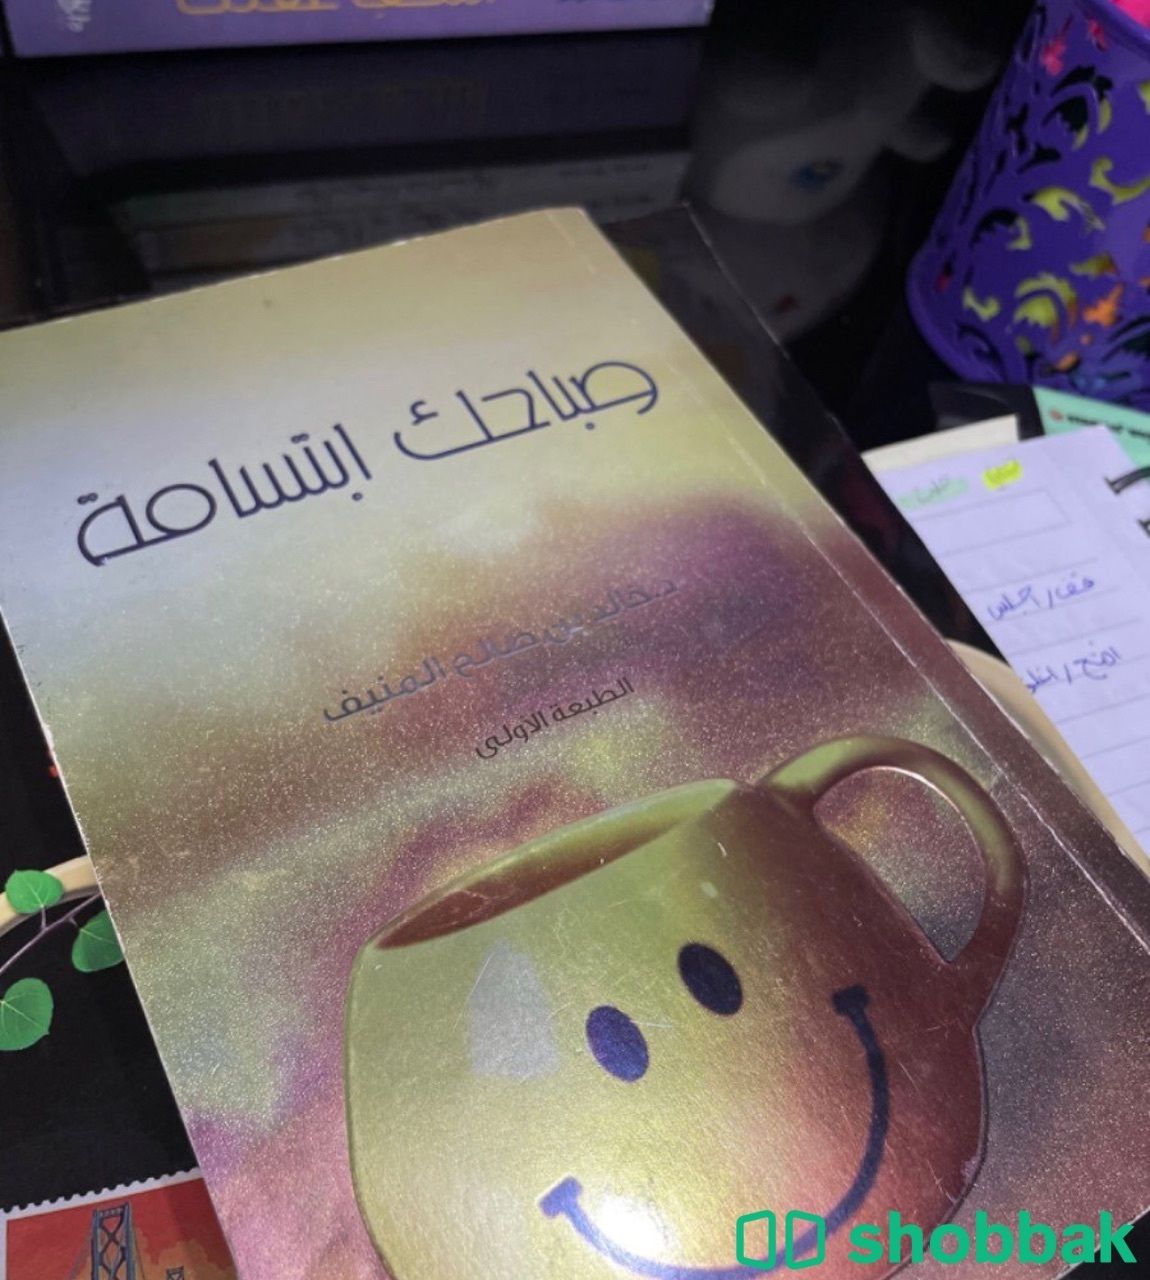 اسم الكتاب صباحك ابتسامة Shobbak Saudi Arabia